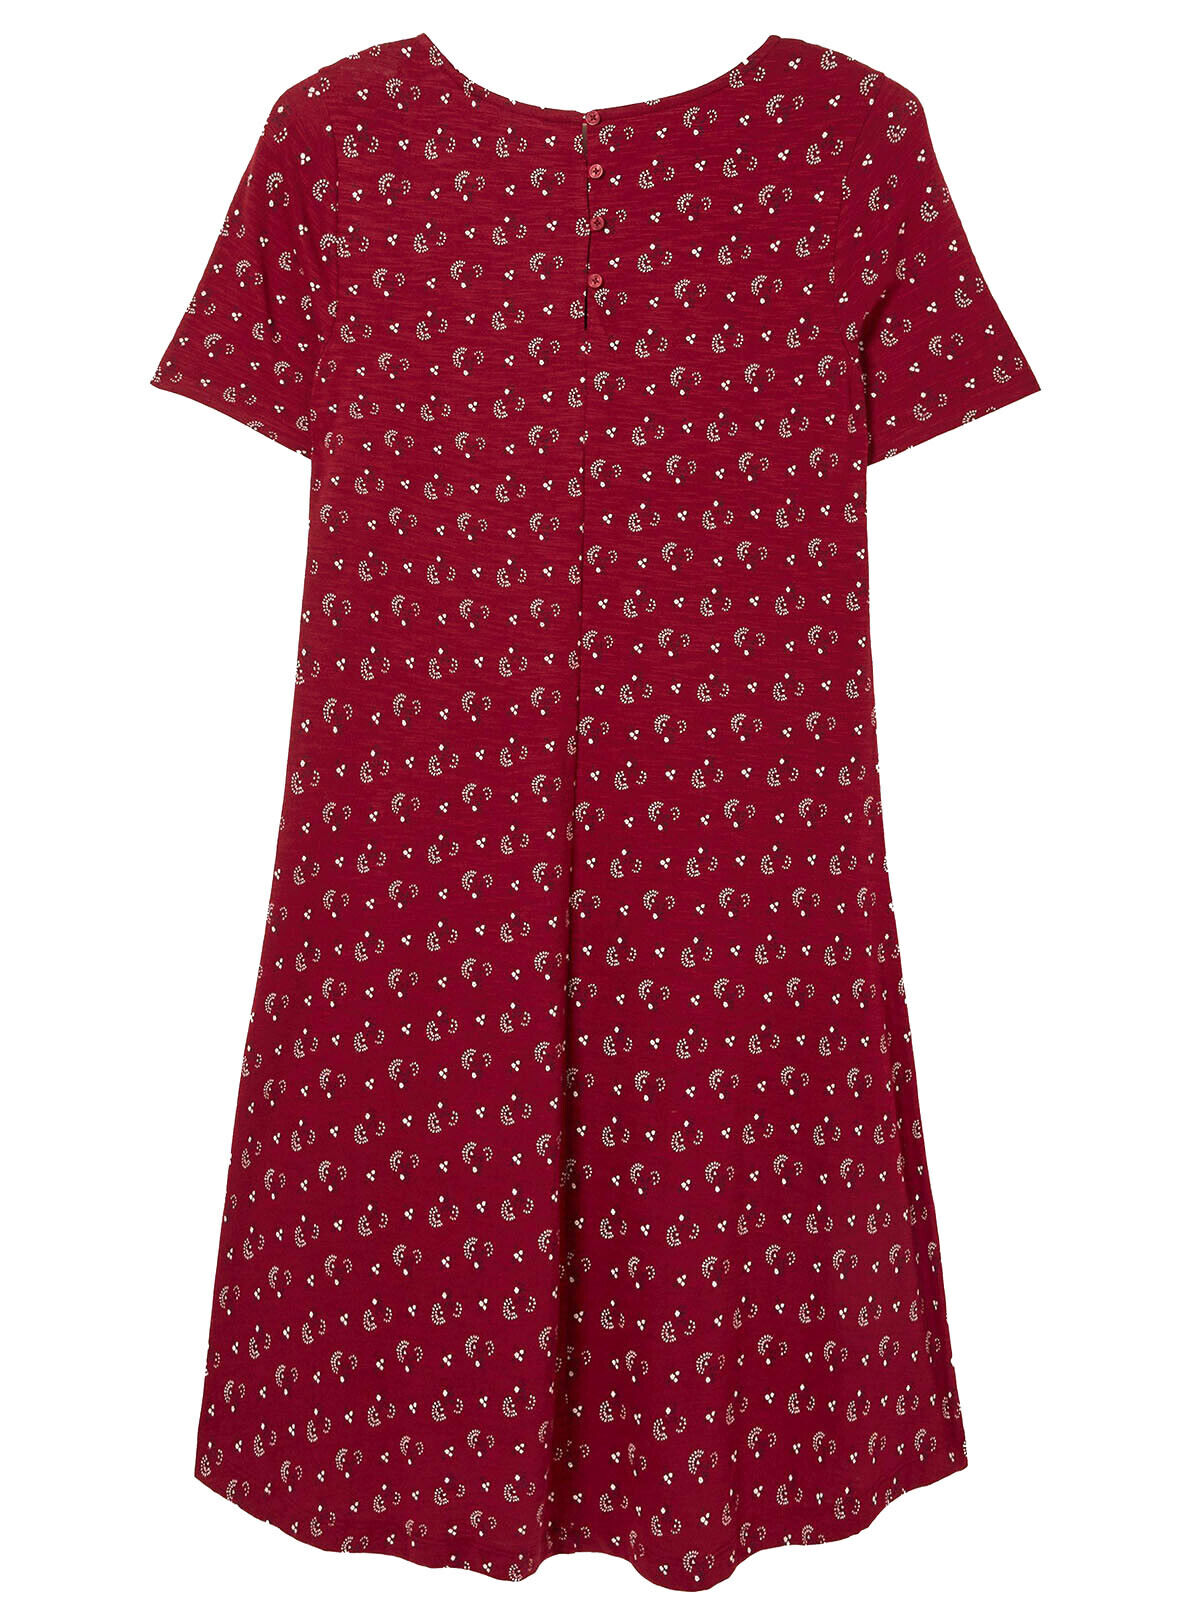 EX Fat Face Claret Cotton Modal Batik Posy Simone Dress 8 10 12 14 16 18 RRP £46